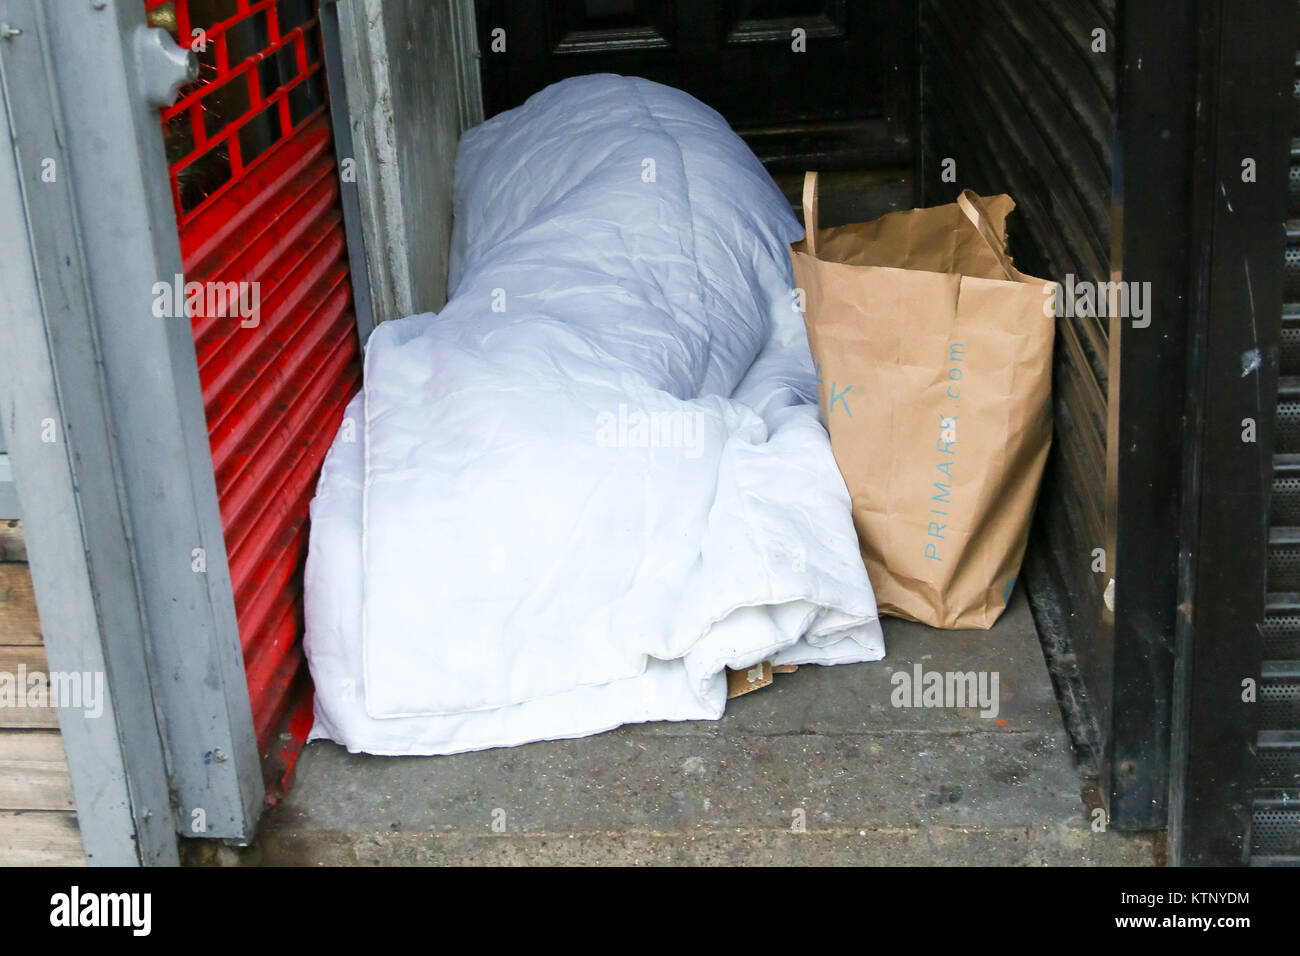 Le nord de Londres, Royaume-Uni. 28 Dec, 2017. Une personne dormant sur une porte très étroite avec l'écart entre les boutiques dans le nord de Londres après une nuit très froide. Selon le Comité des comptes publics plus de 9 000 personnes sont sans-abri dans les rues. Credit : Dinendra Haria/Alamy Live News Banque D'Images